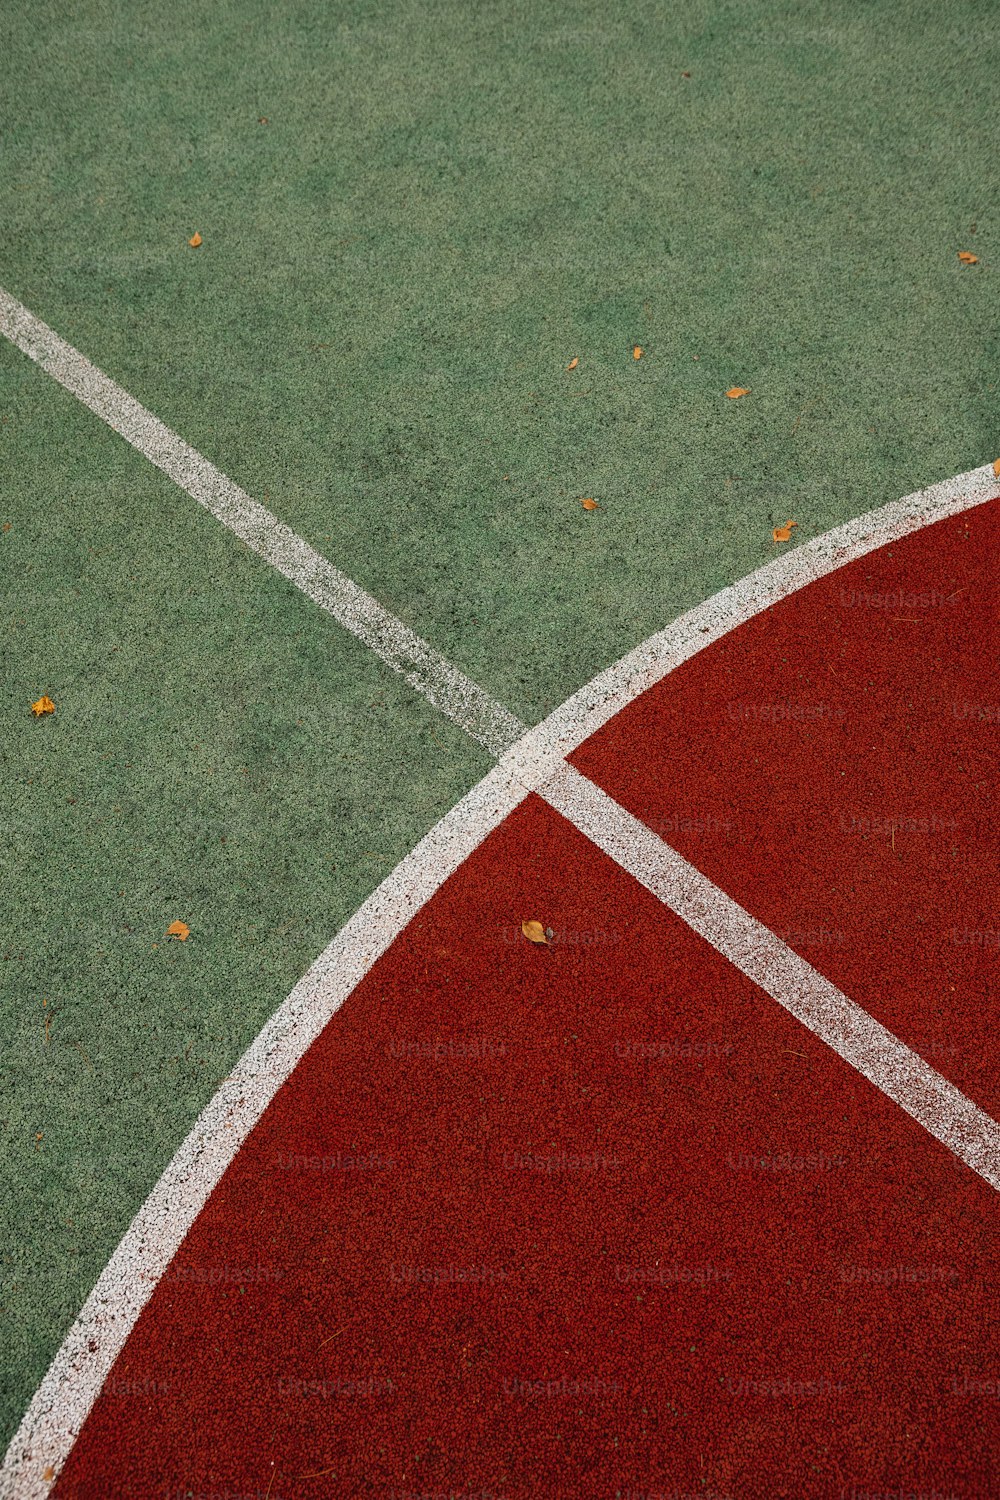 um close up de uma quadra de tênis com uma raquete de tênis